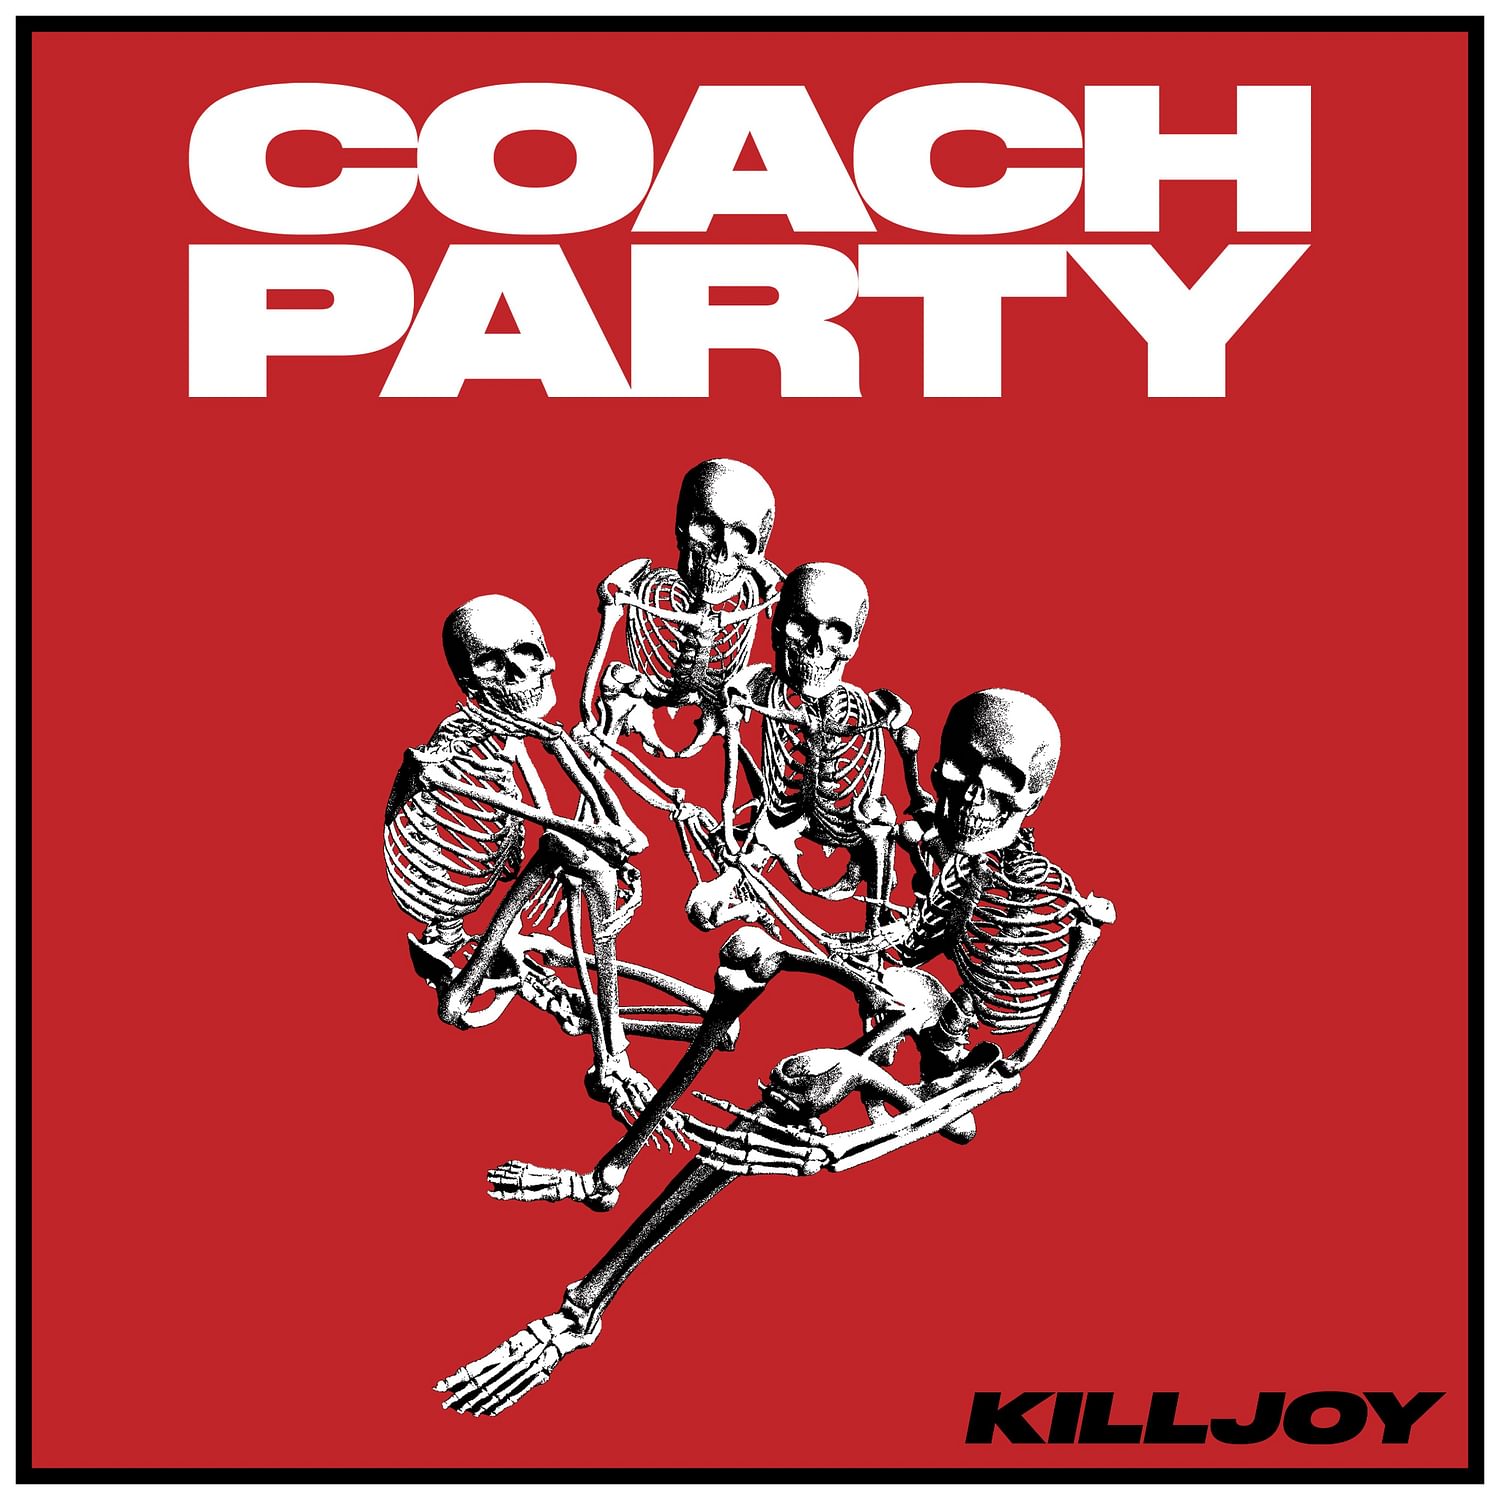 <p><strong>Coach Party</strong> - KILLJOY</p>